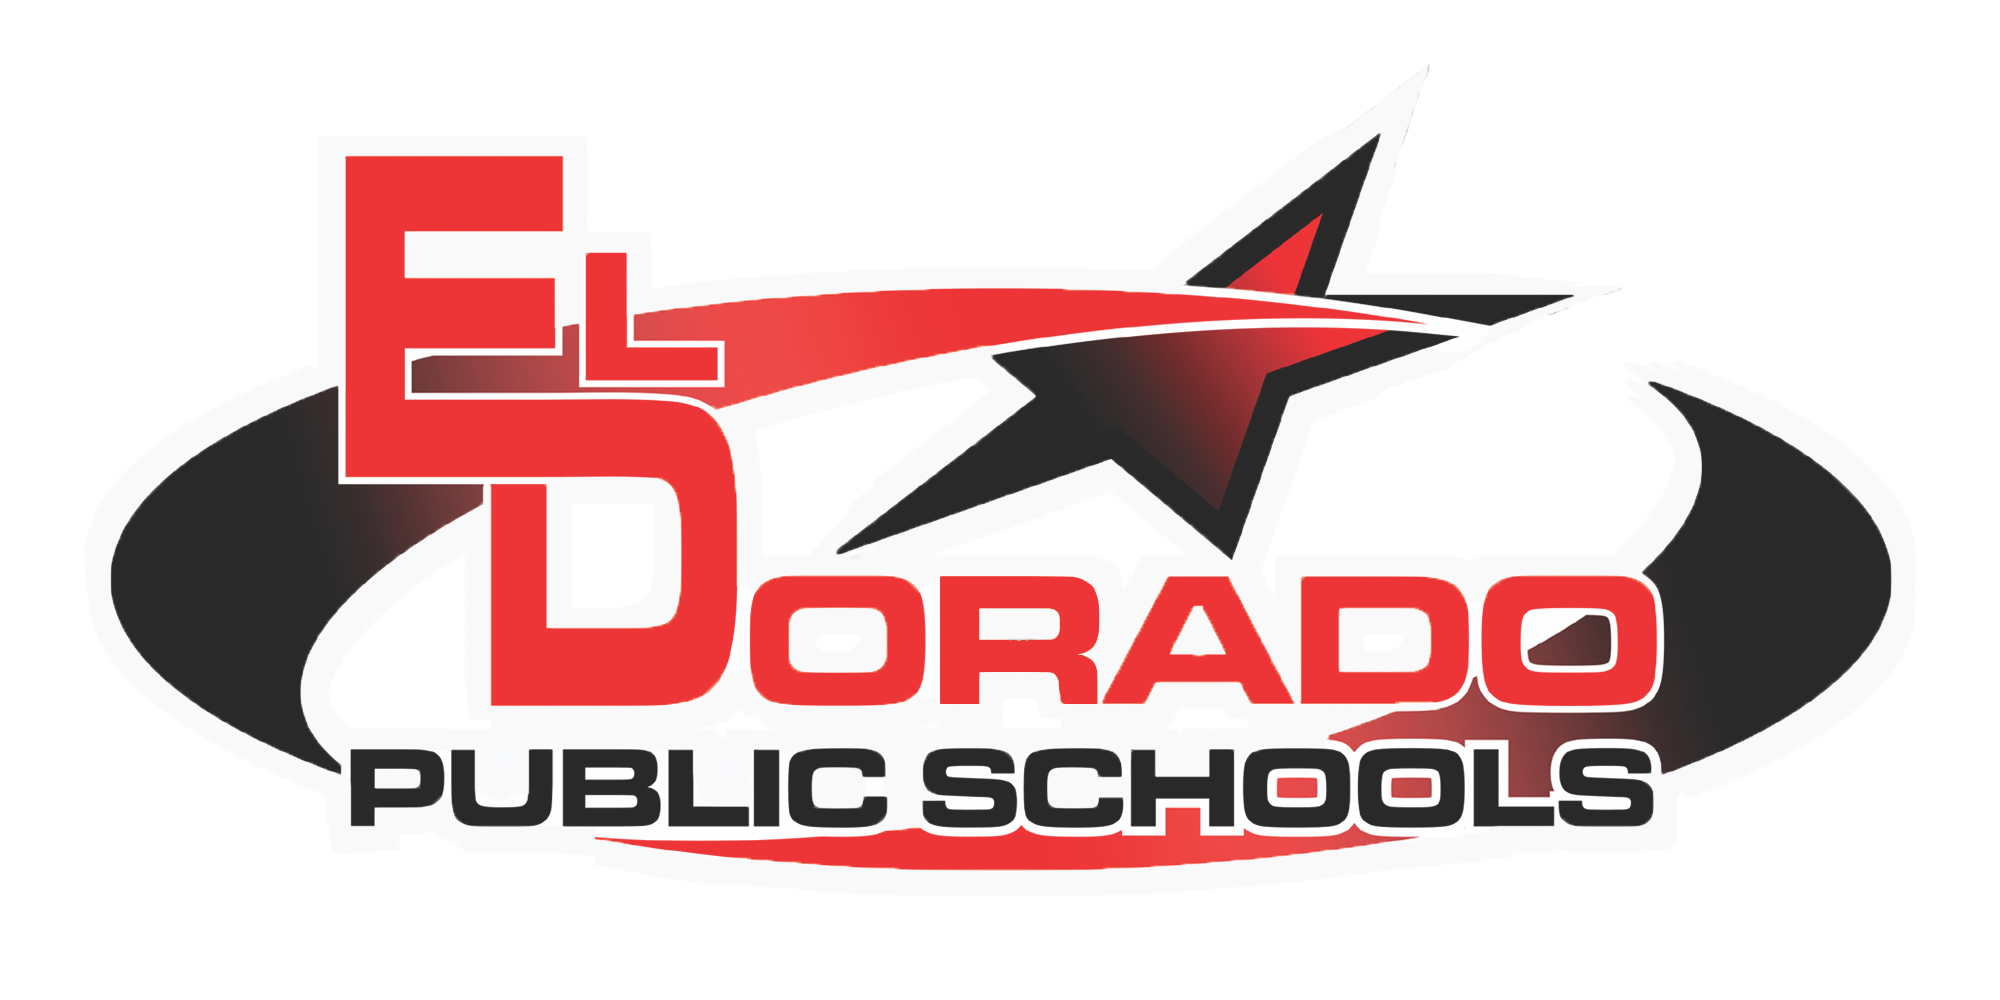 El Dorado Virtual Schools